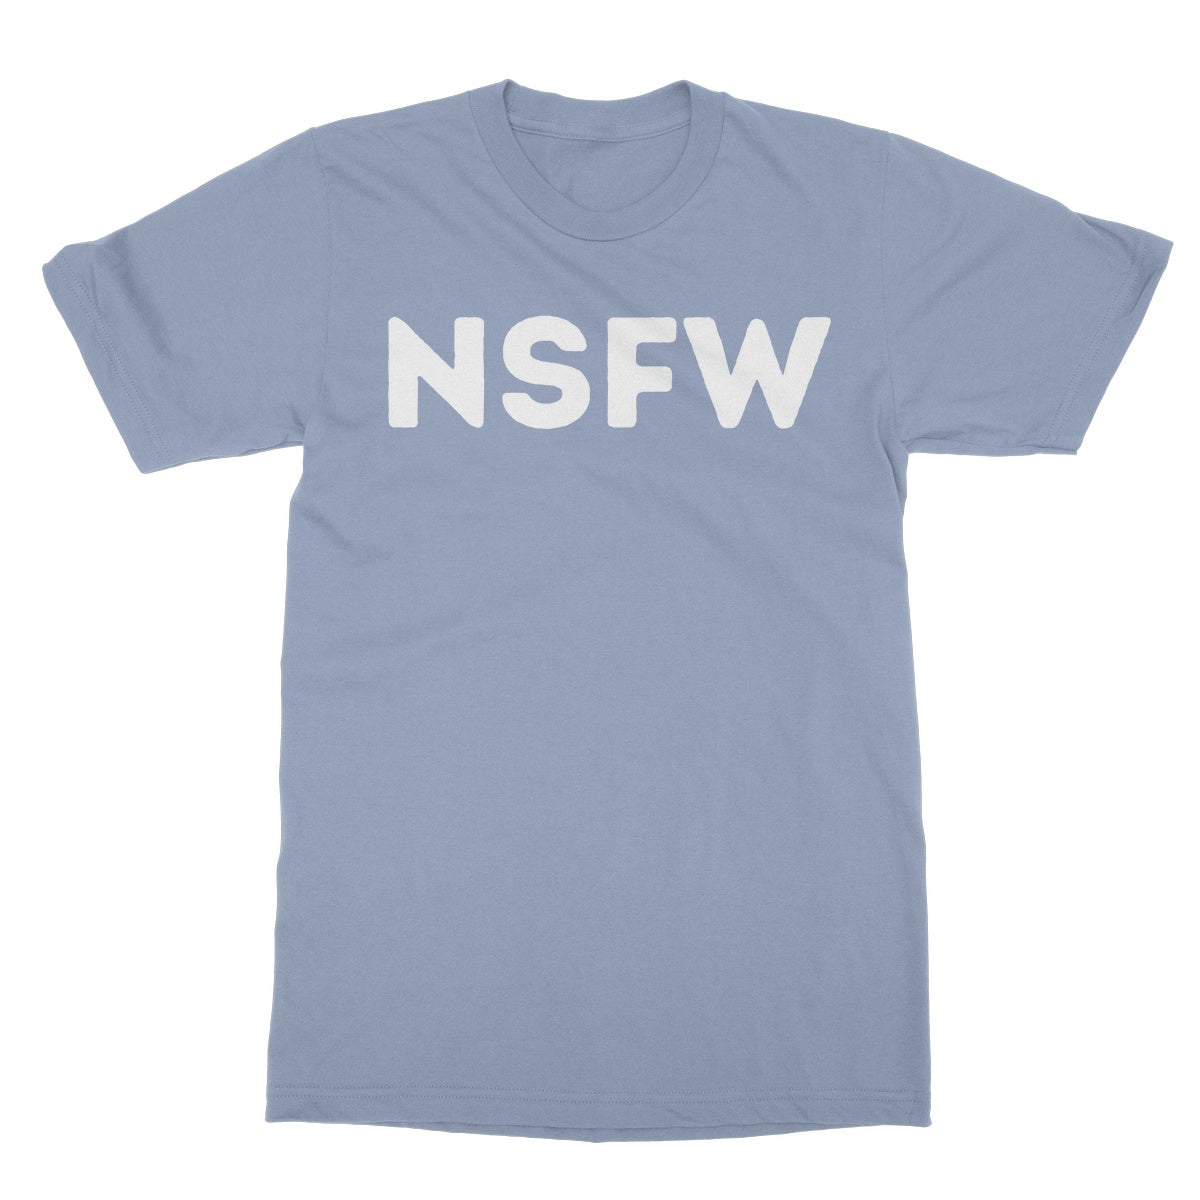 nsfw t shirt blue